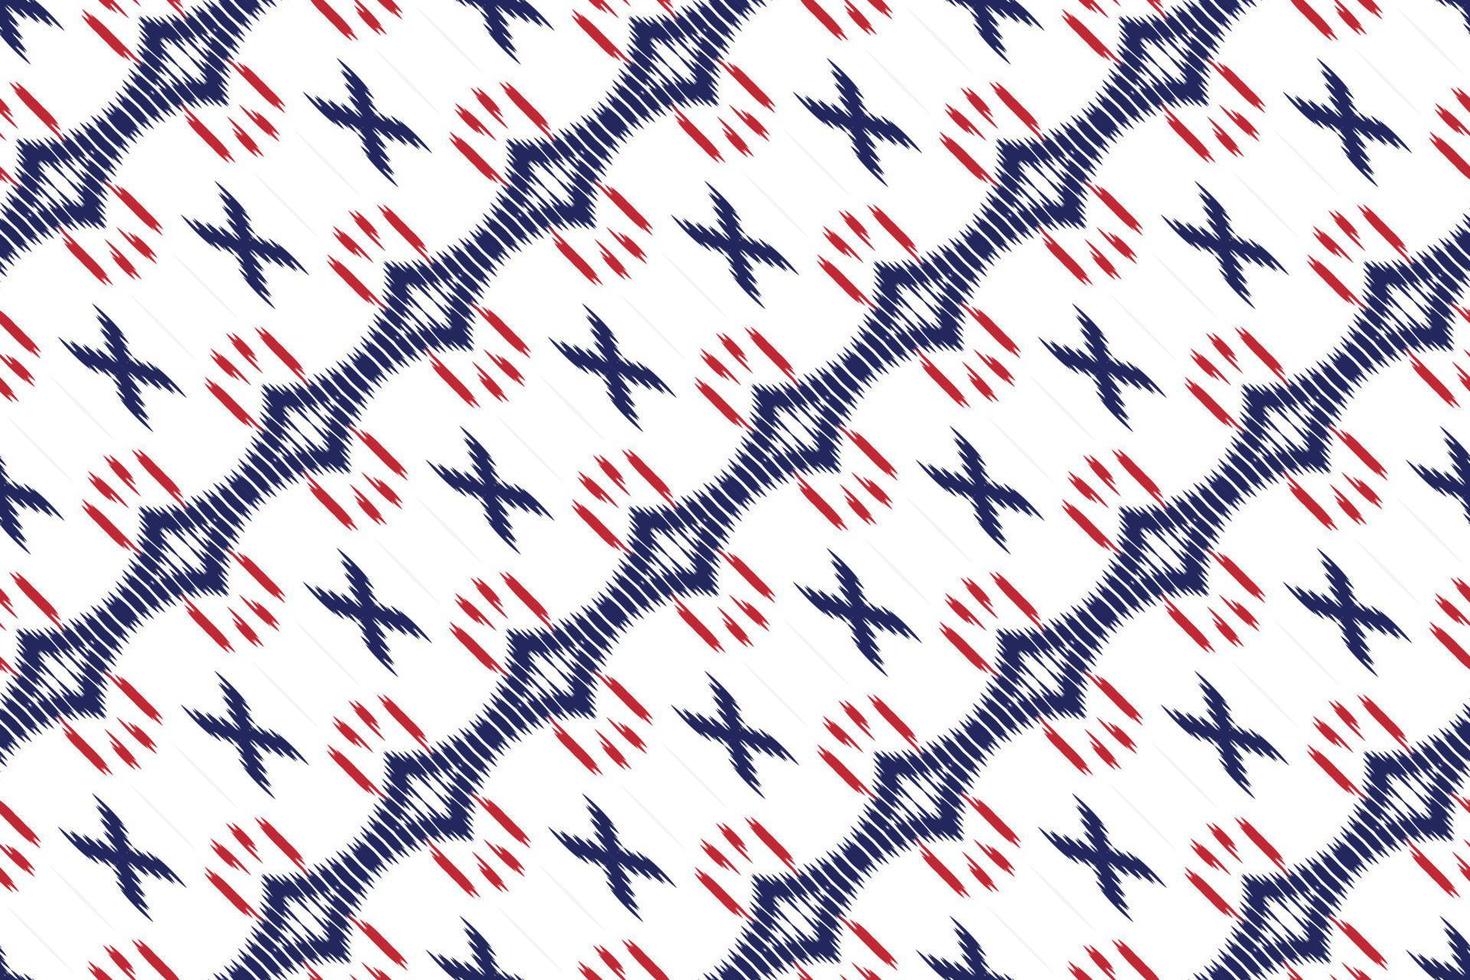 Ikat dots tribal Africa Seamless Pattern. Ethnic Geometric Ikkat Batik Digital vector textile Design for Prints Fabric saree Mughal brush symbol Swaths texture Kurti Kurtis Kurtas